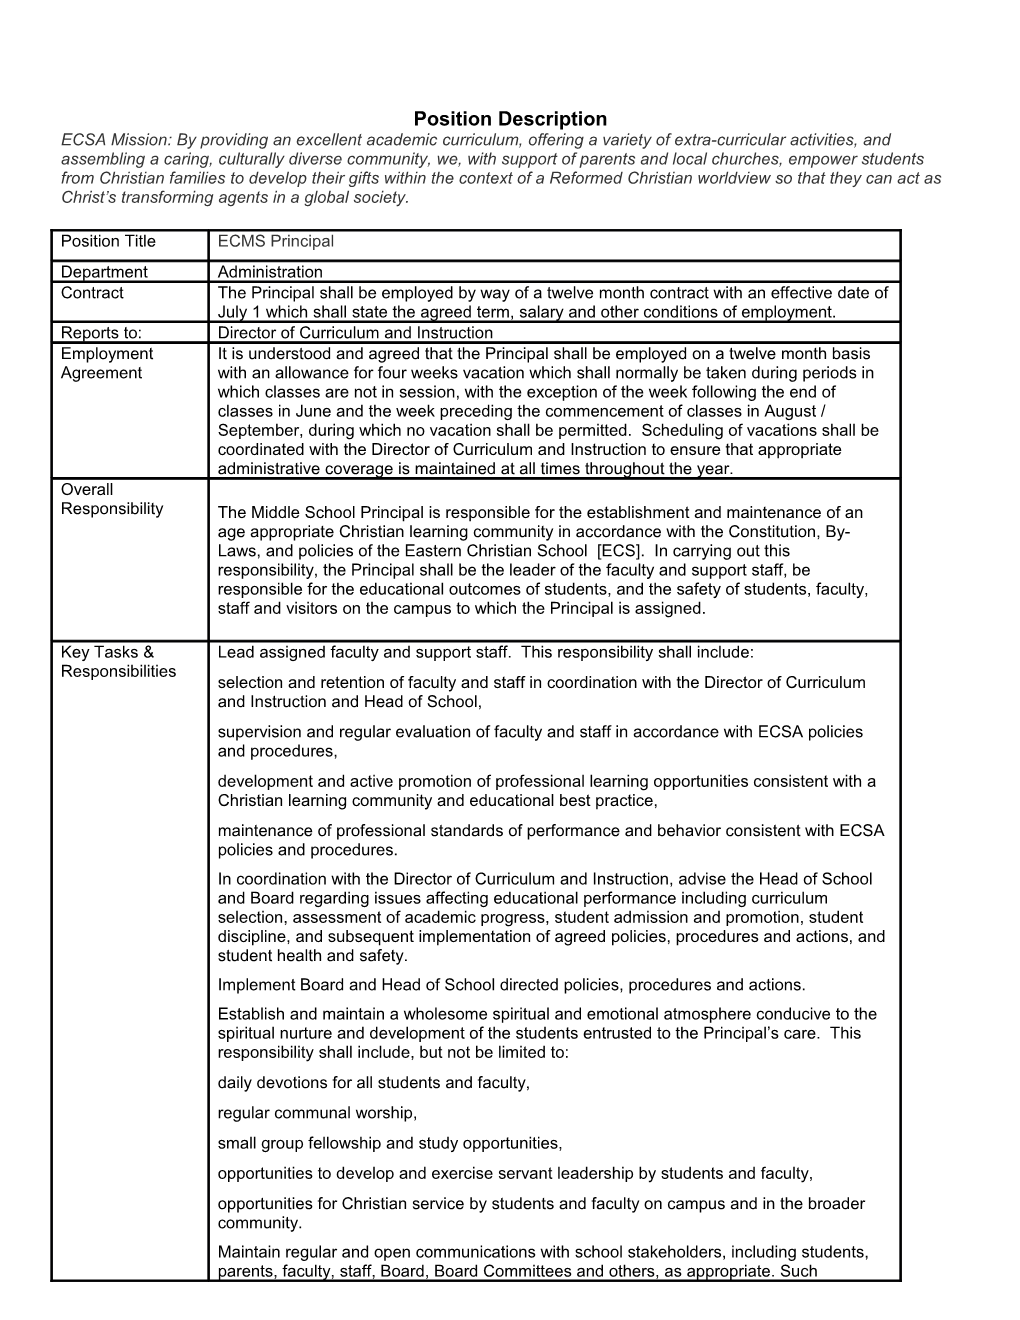 ECMS Principal Job Description - 9.10.14